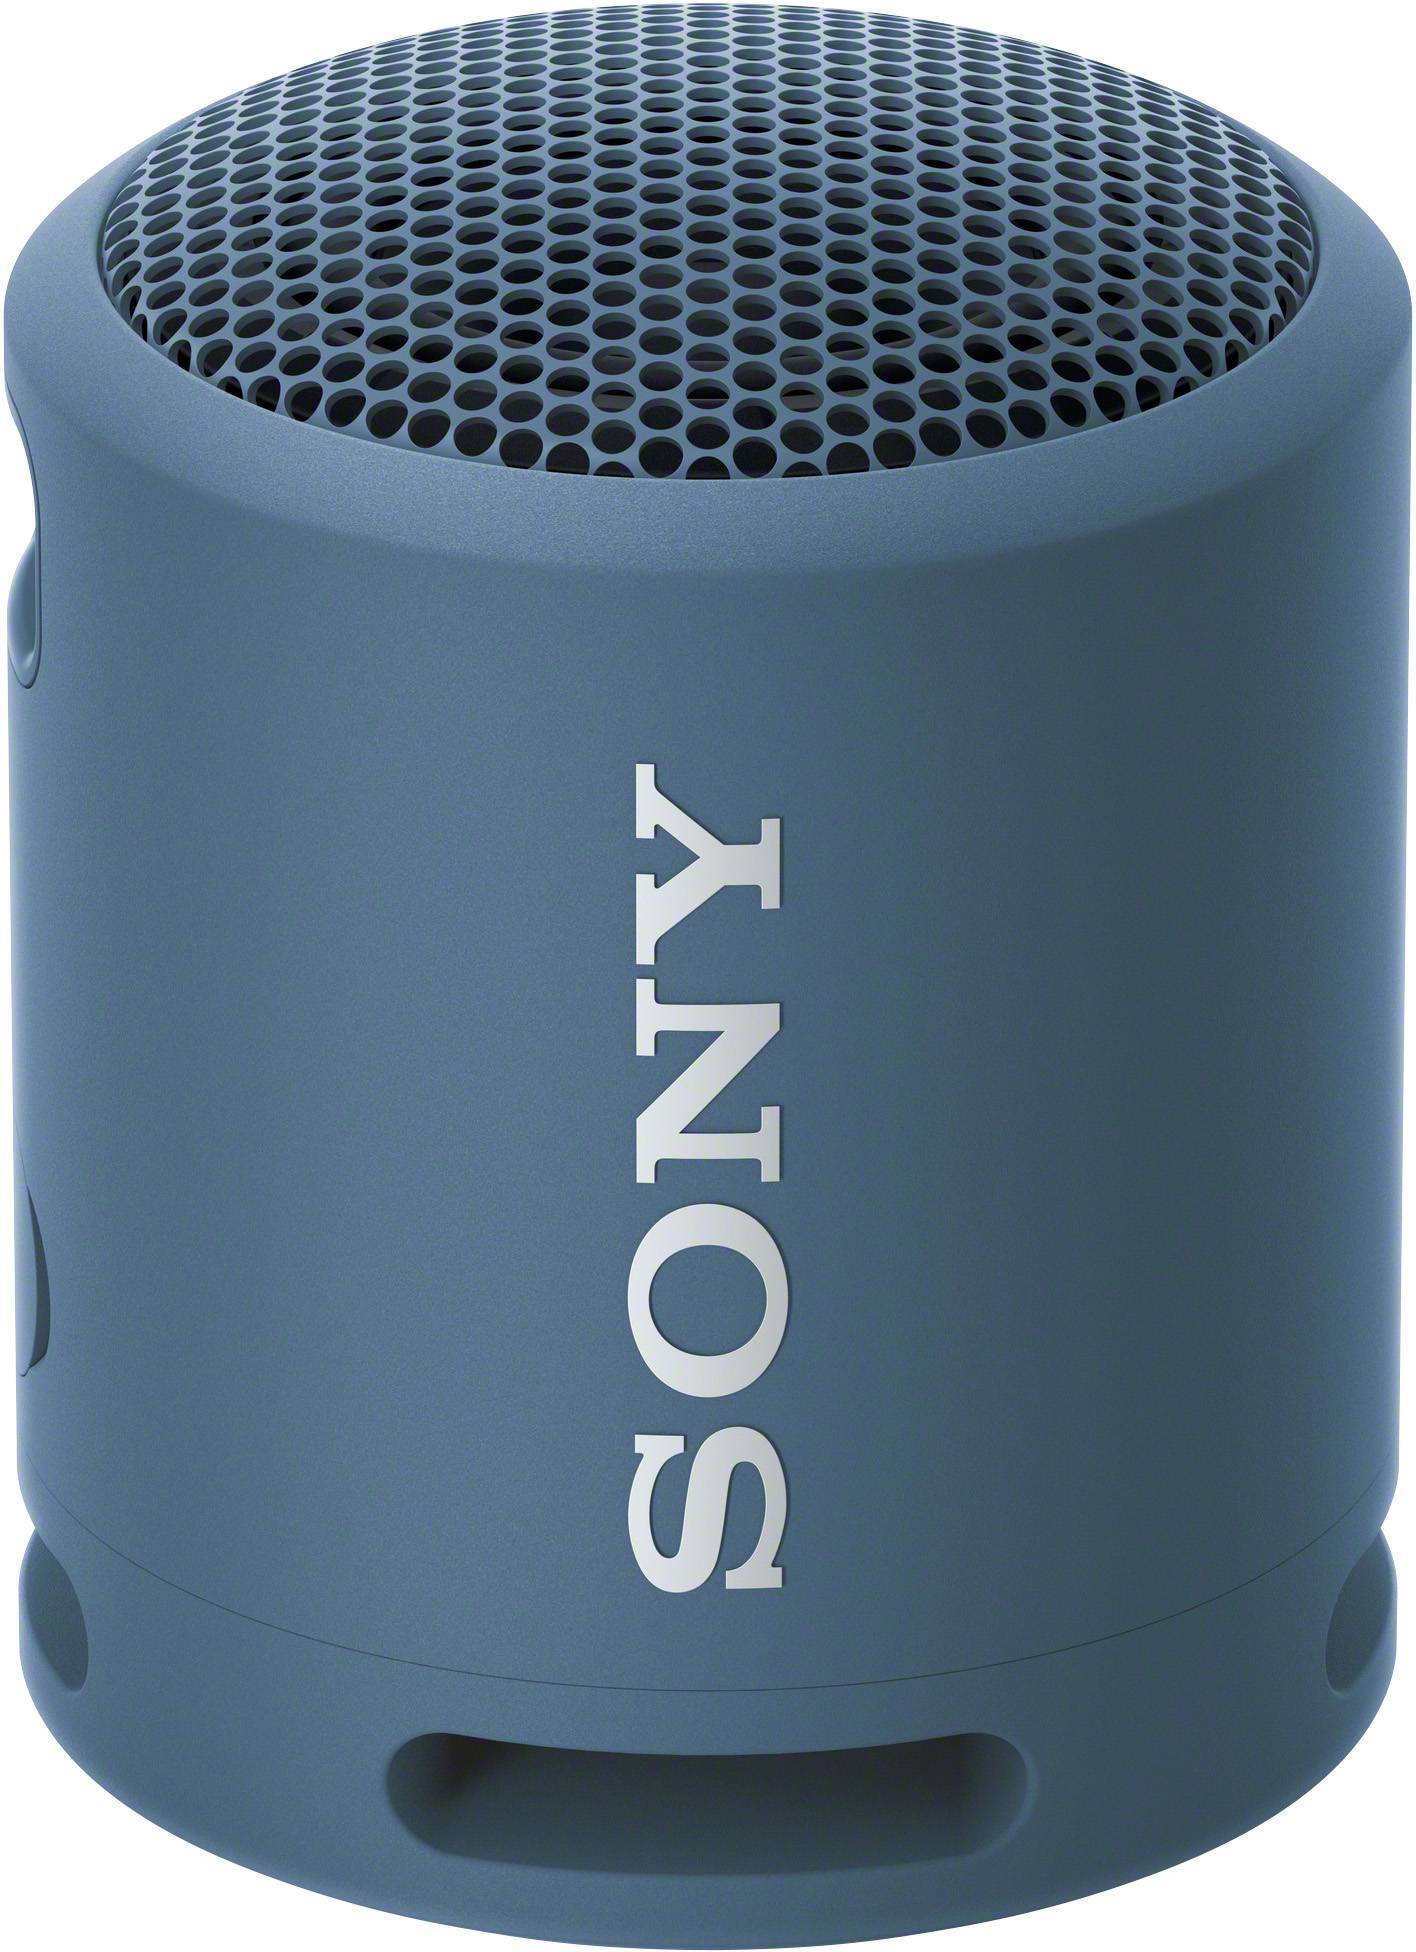 Портативная колонка Sony SRS-XB13/LC Blue